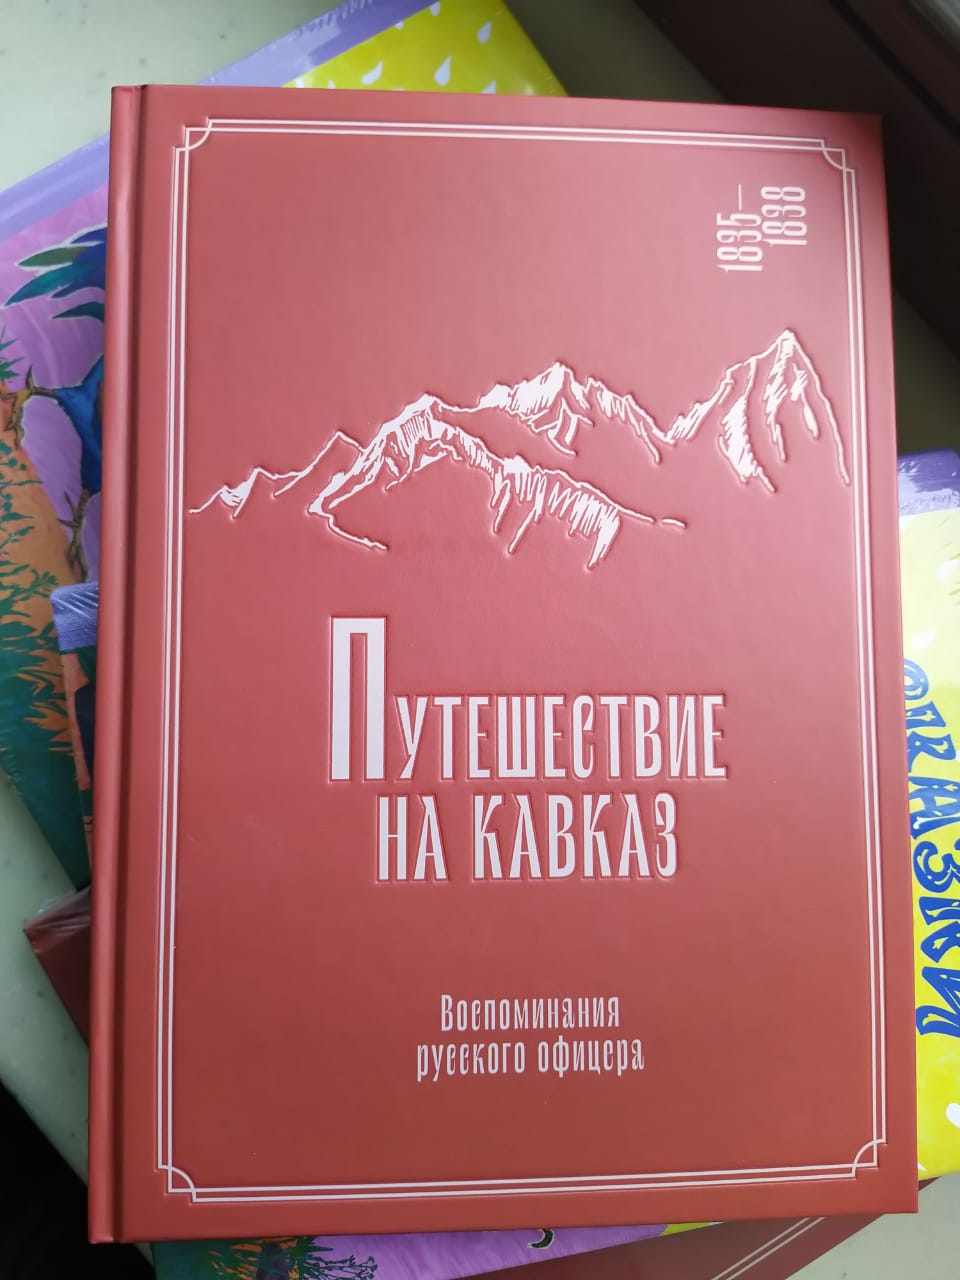 Переизданы мемуары барона Федора Торнау о жизни на Кавказе в XIX веке